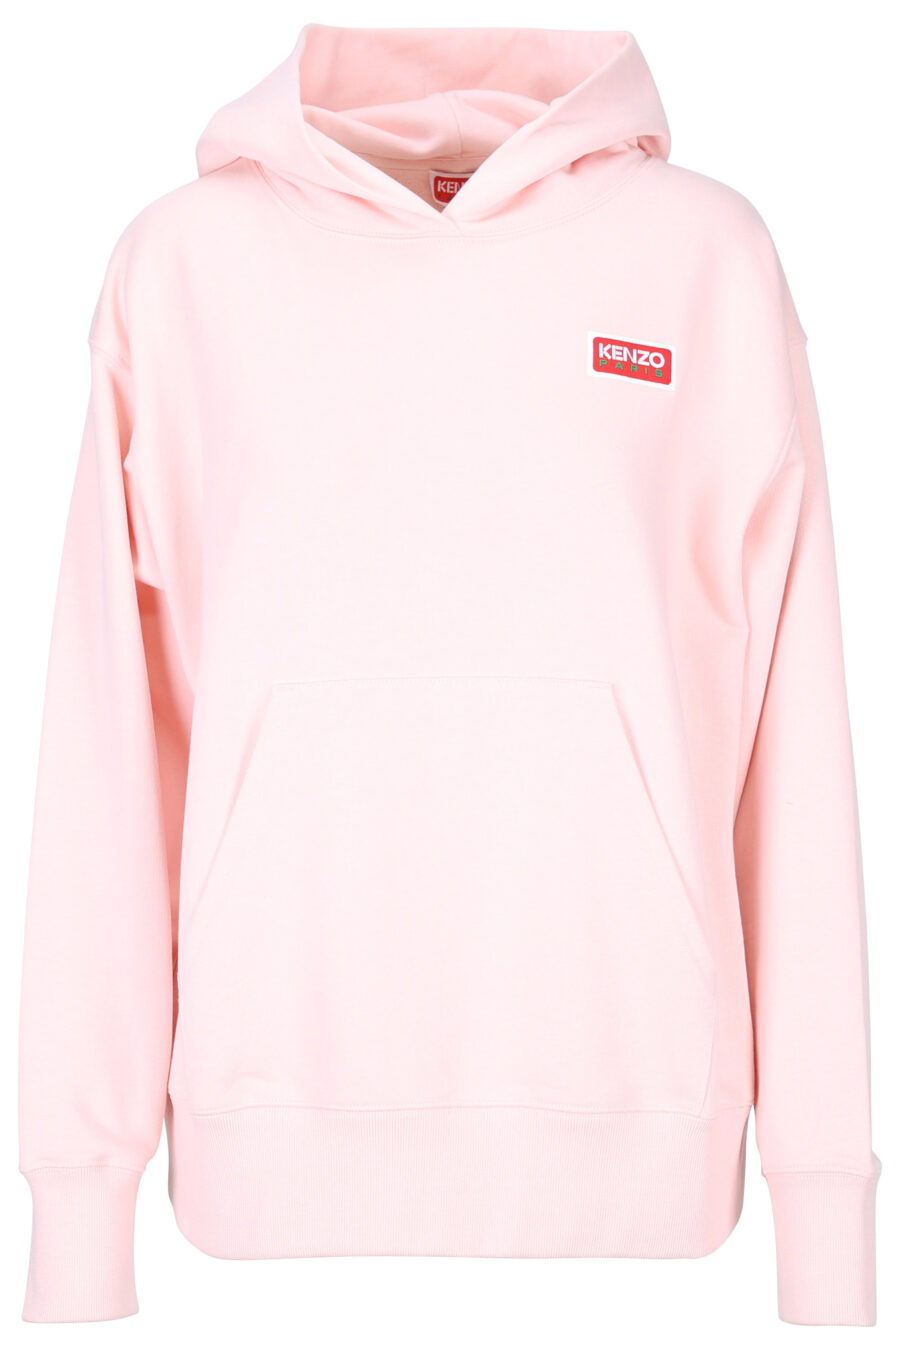 Sweat oversize rose à capuche avec logo "kenzo paris" - 3612230515734